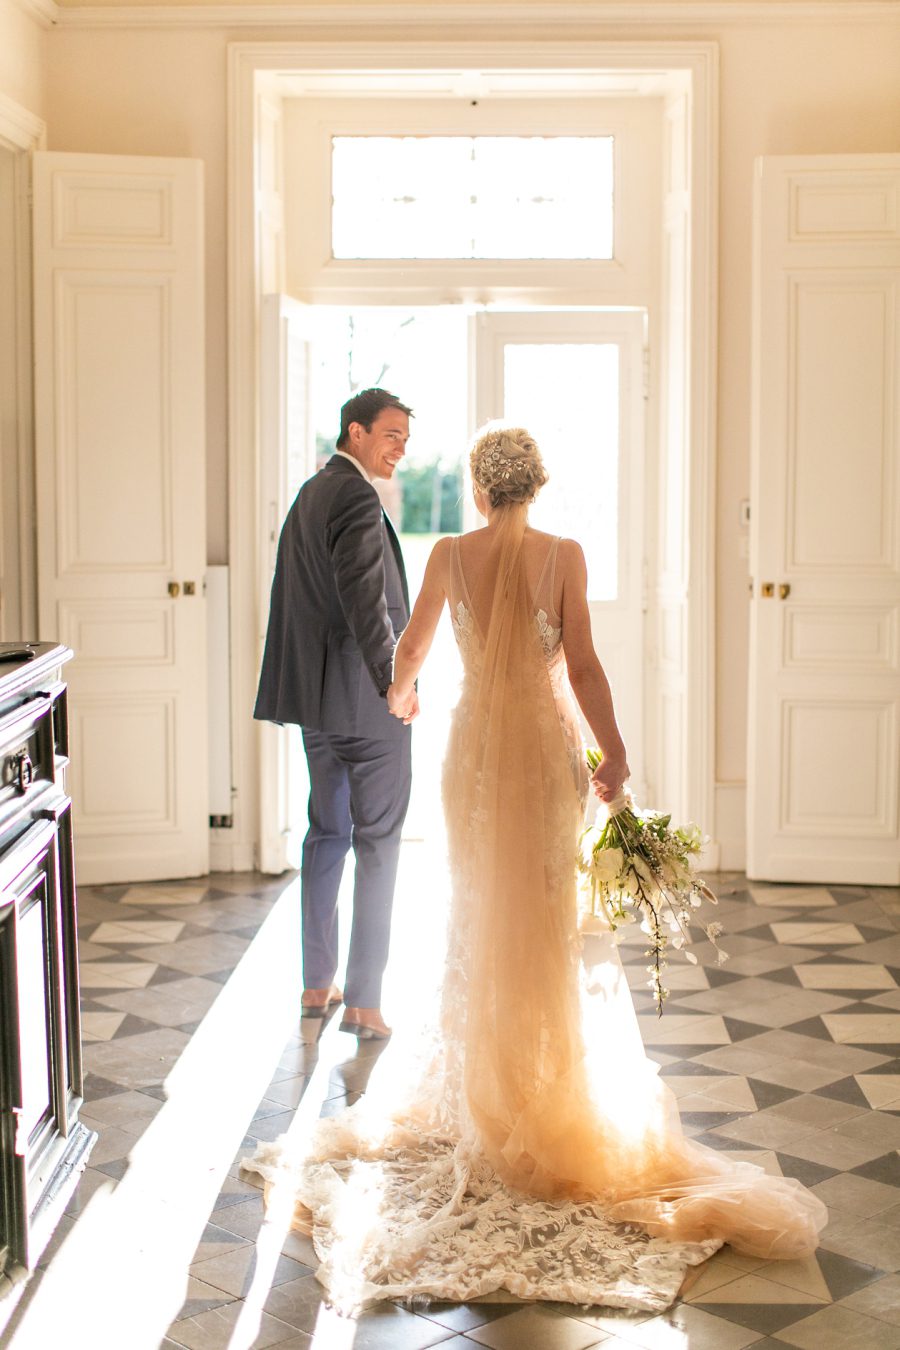 Luxury wedding photographers in the UK